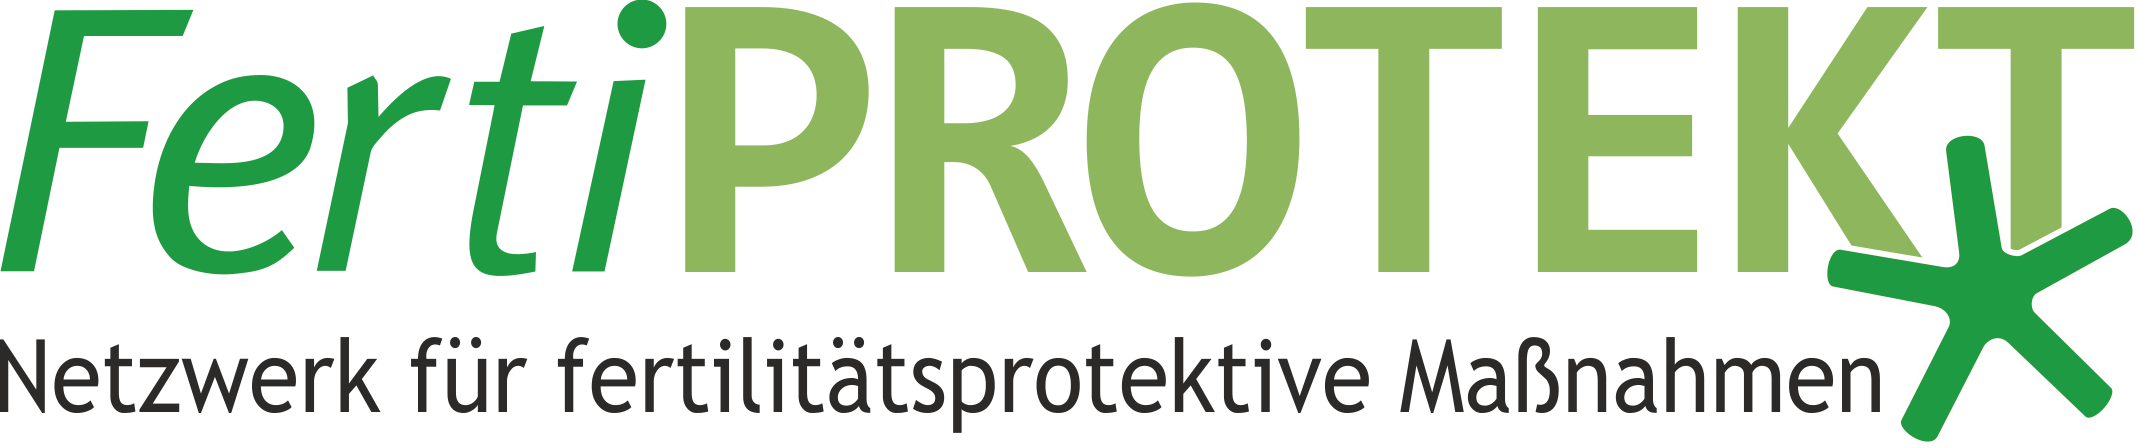 Logo Netzwerk FertiPROTEKT